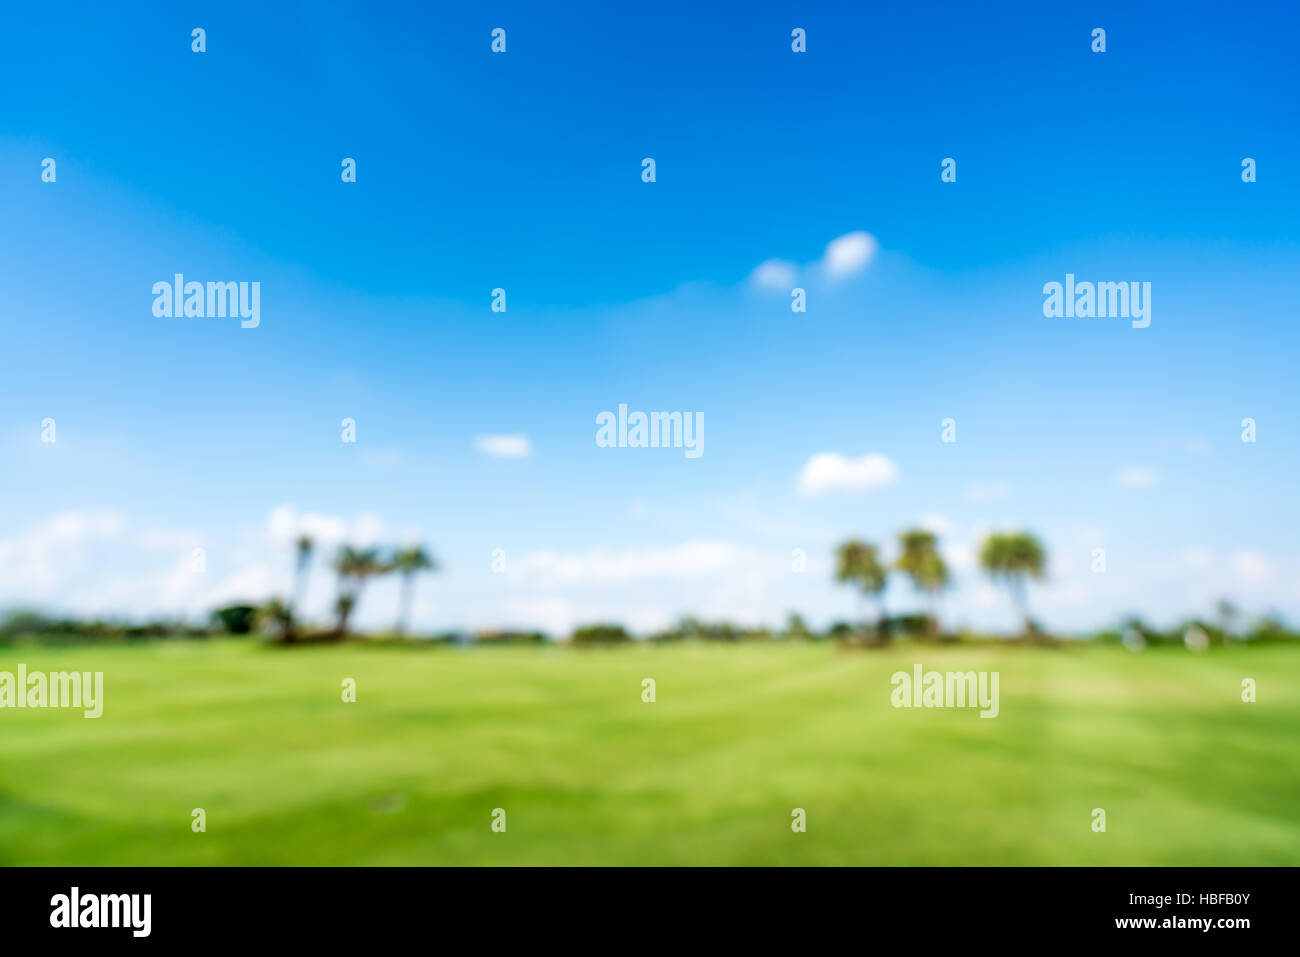 Golfplatz oder grünen Wiese Unschärfe Hintergrund, Textfreiraum am blauen Himmel, Sport oder Natur-Konzept Stockfoto